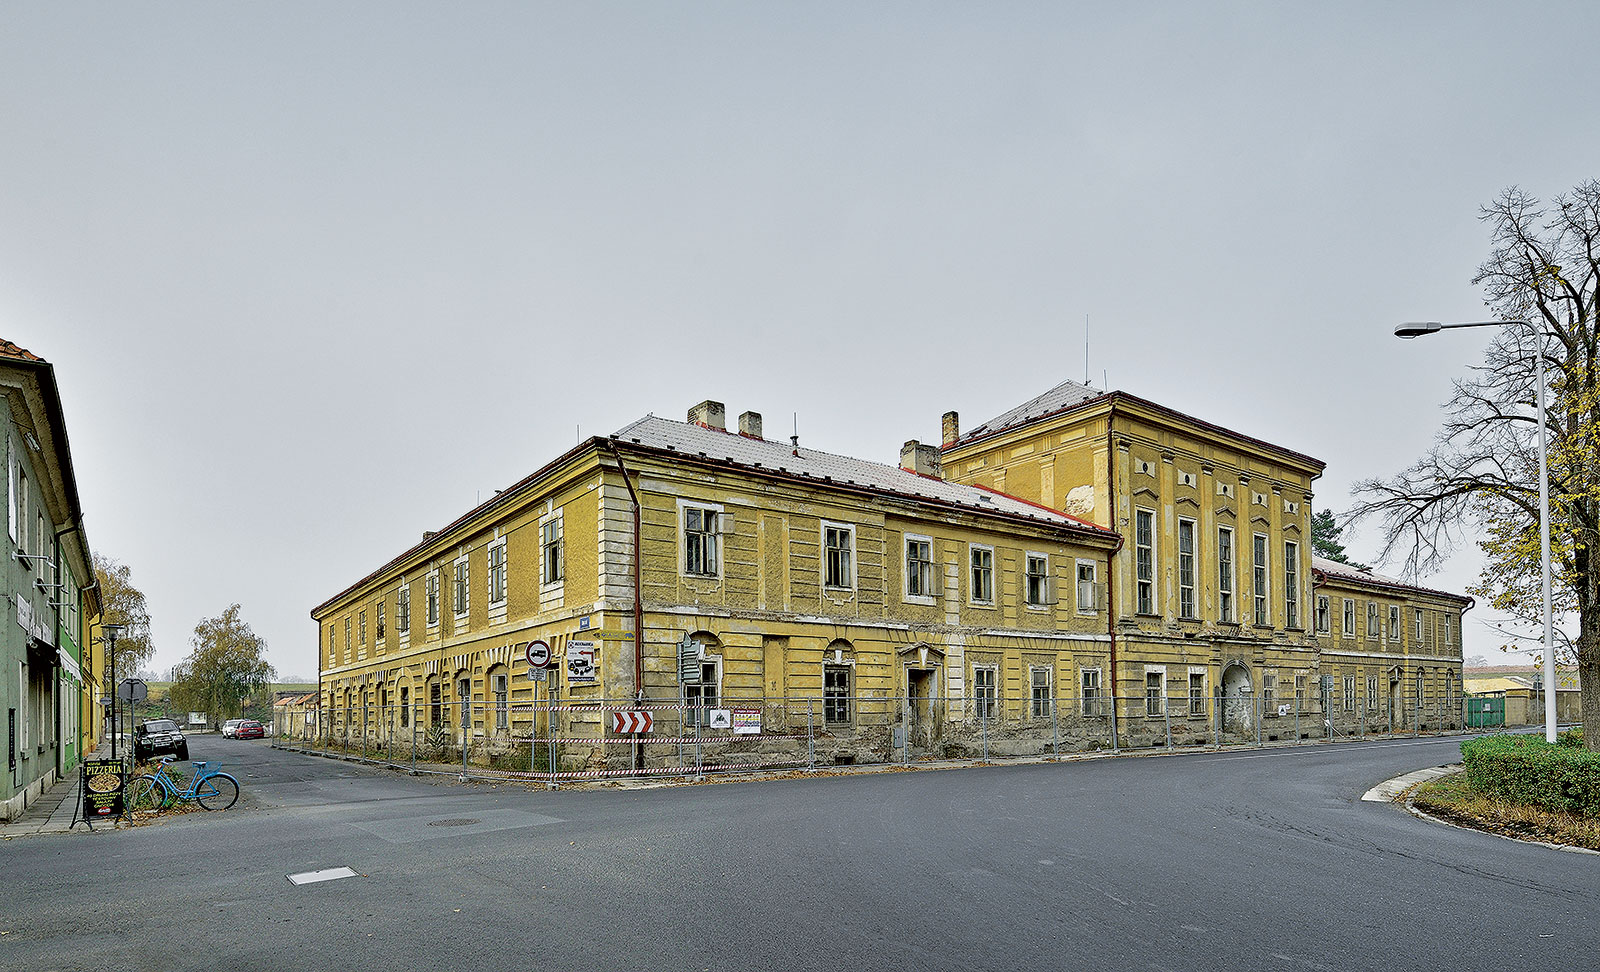 Wieserův dům - nejhonosnější civilní budova v Terezíně před právě probíhající rekonstrukcí